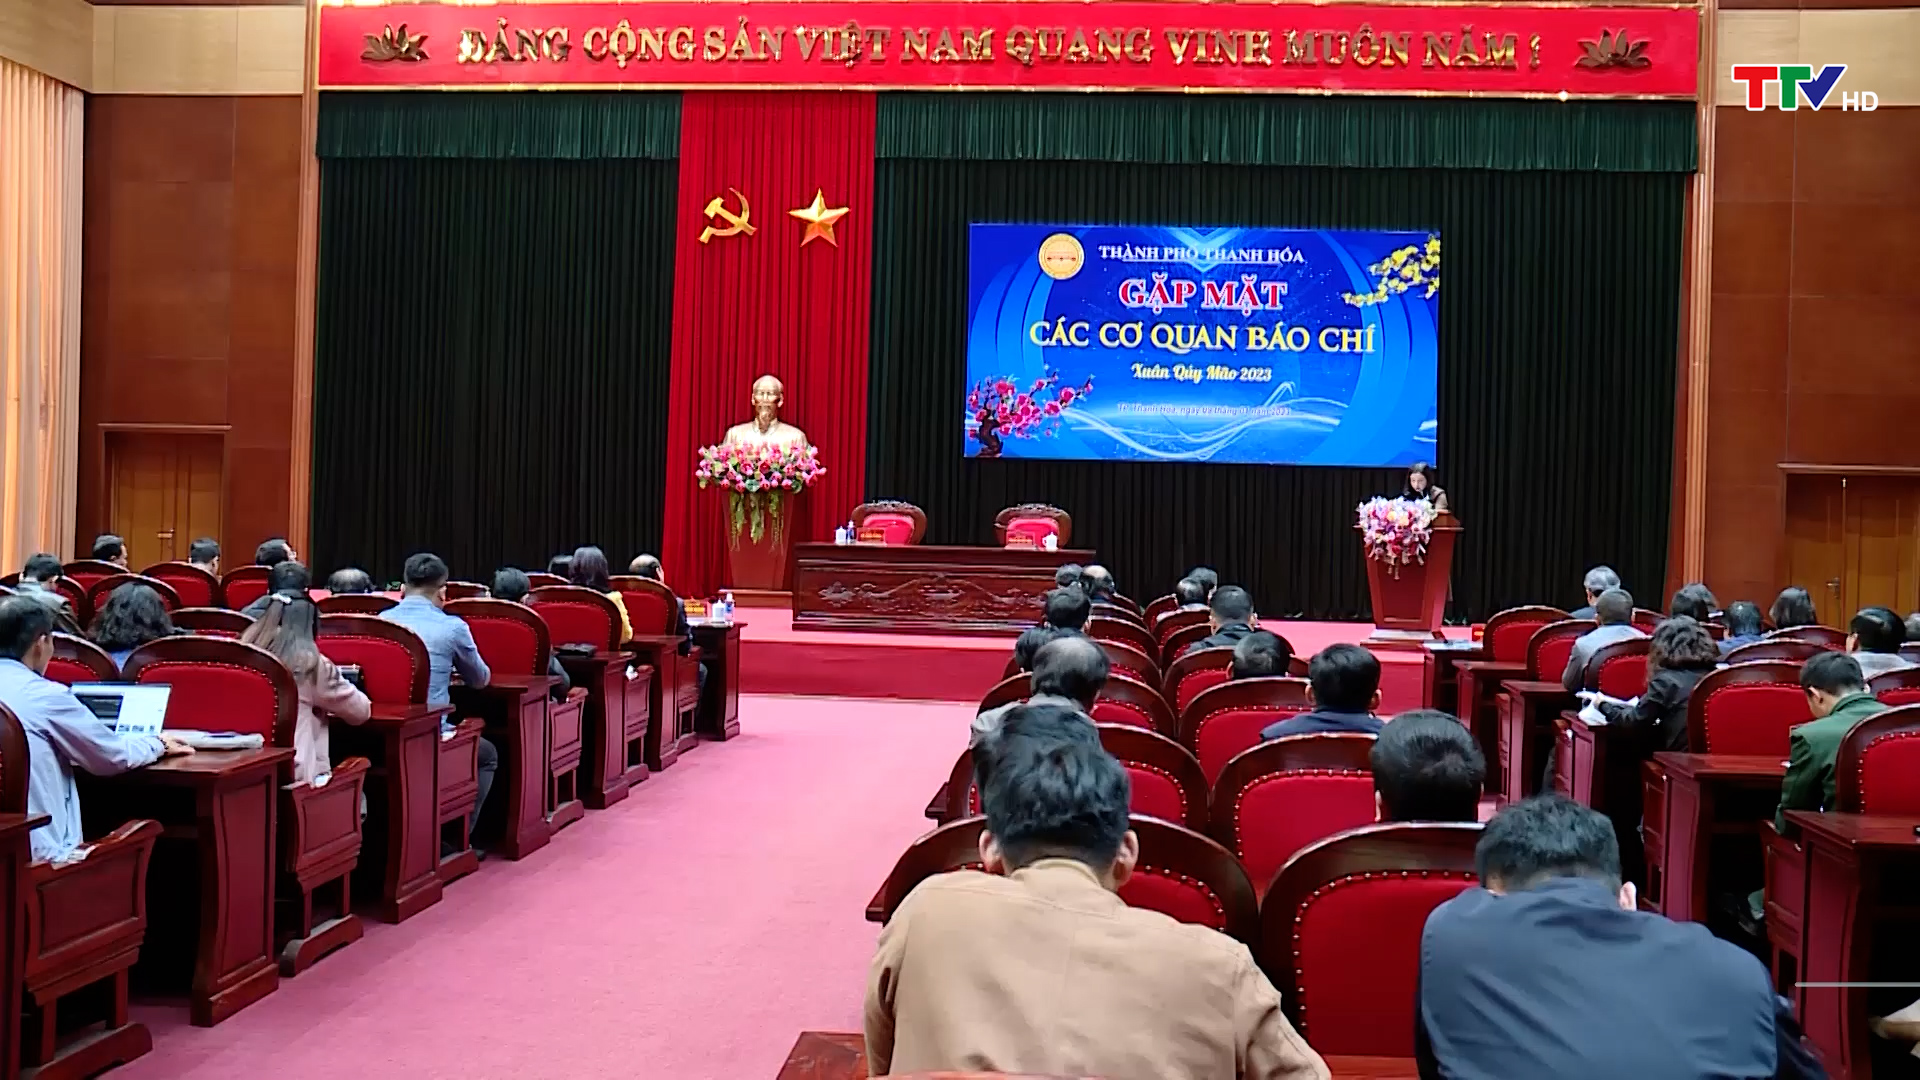 Thành phố Thanh Hóa gặp mặt các cơ quan báo chí Xuân Quý Mão 2023 - Ảnh 2.